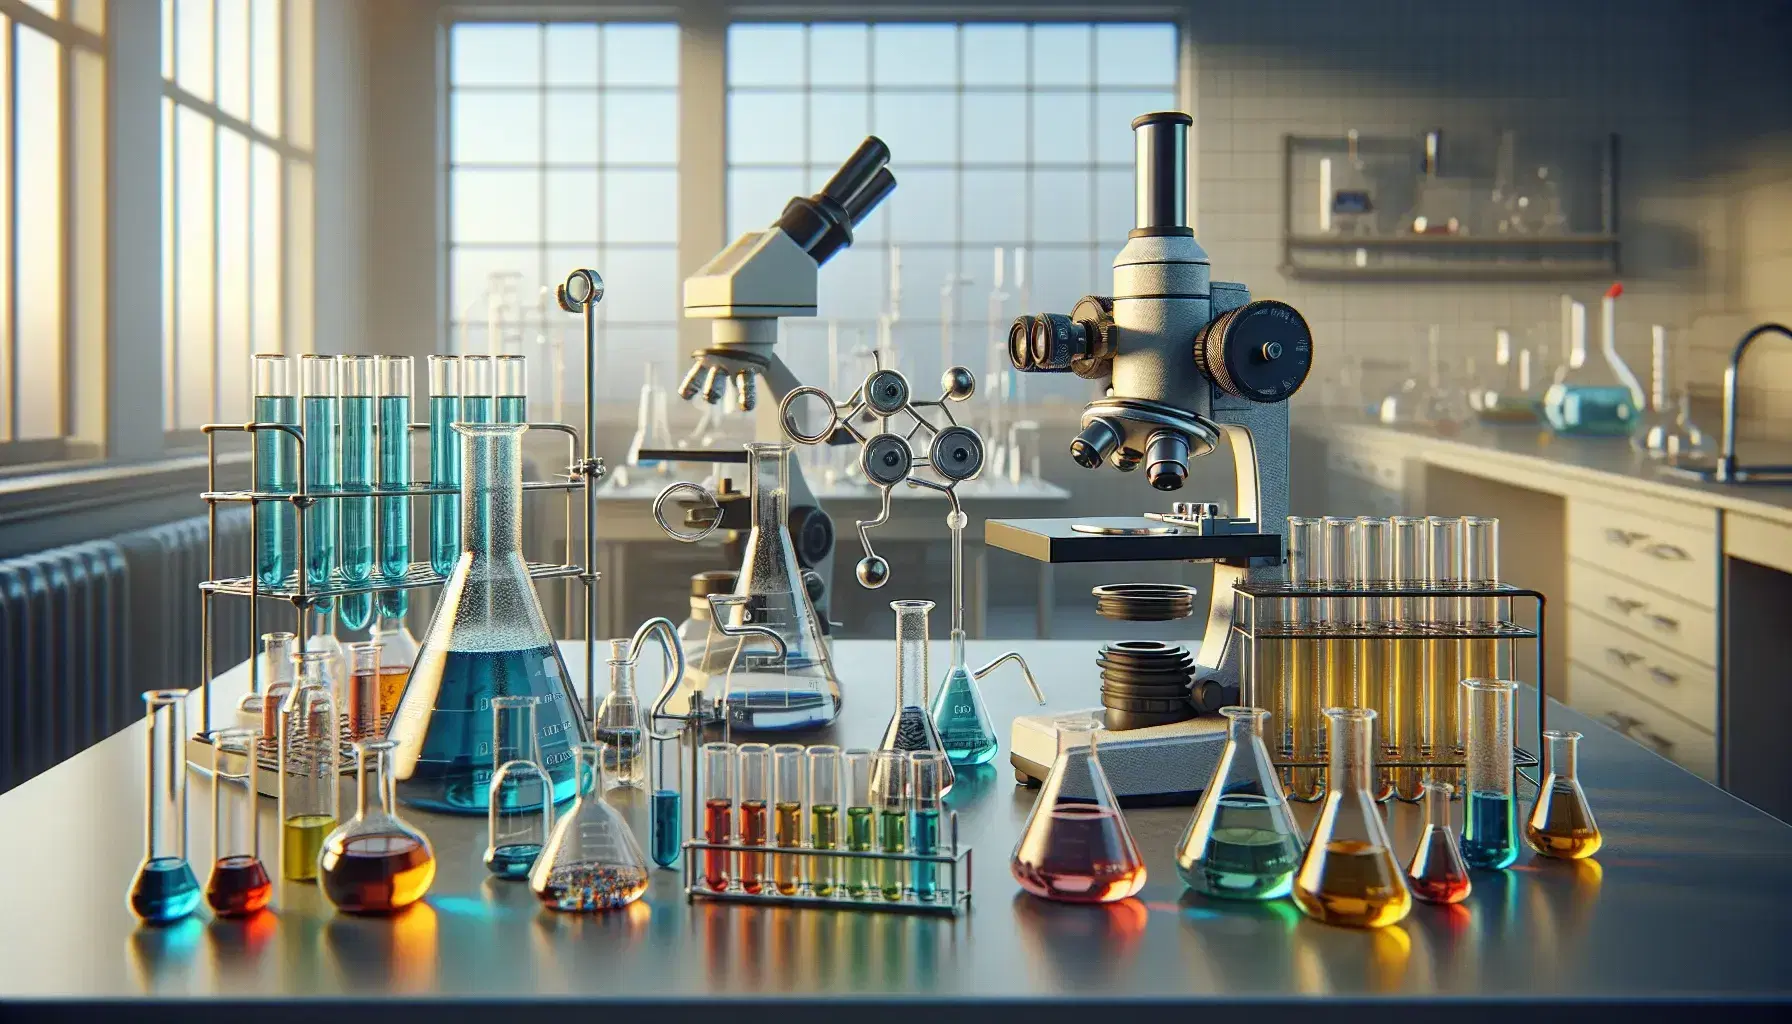 Laboratorio de química con tubos de ensayo de colores, mechero Bunsen, microscopio óptico y balanza analítica.